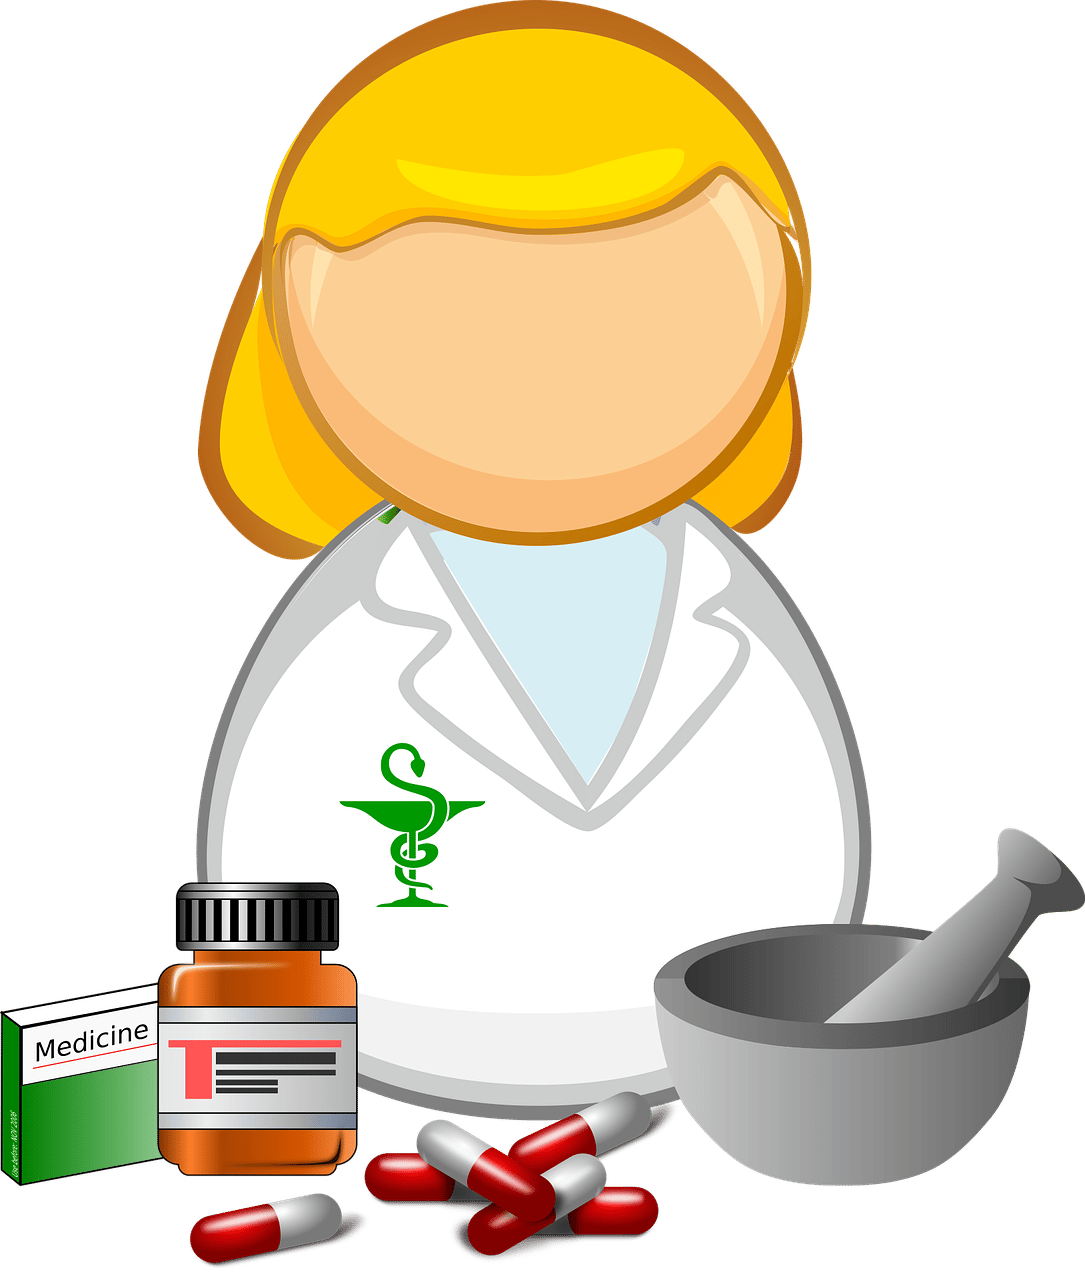 chemist_Bild von OpenClipart-Vectors auf Pixabay